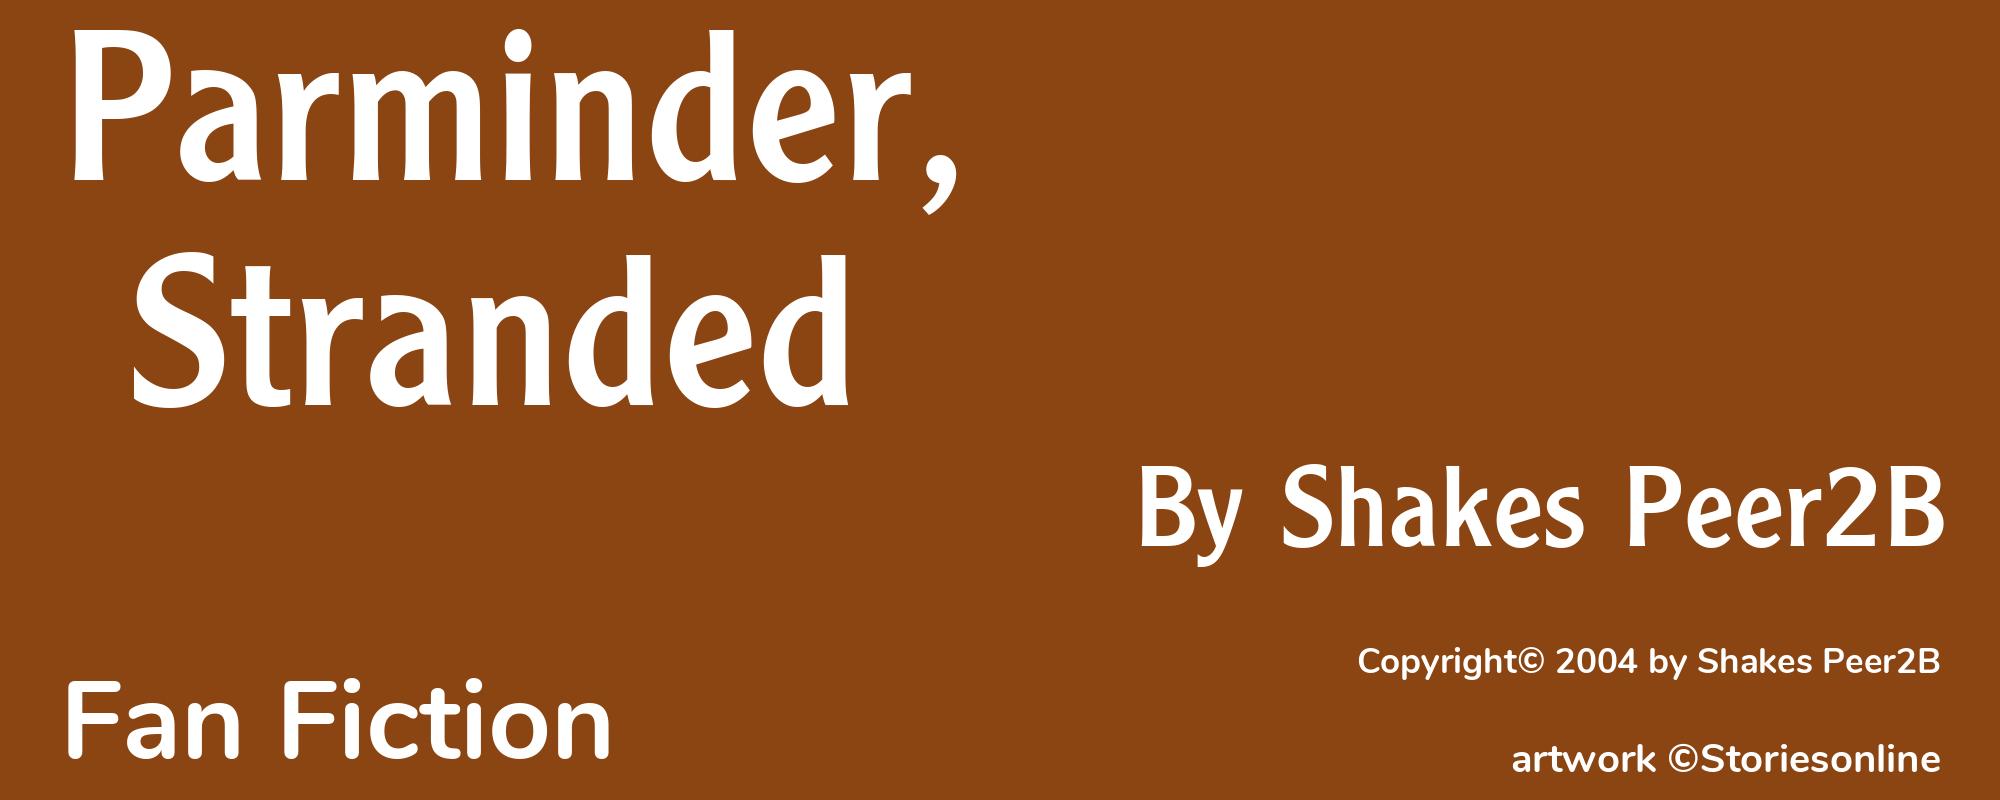 Parminder, Stranded - Cover